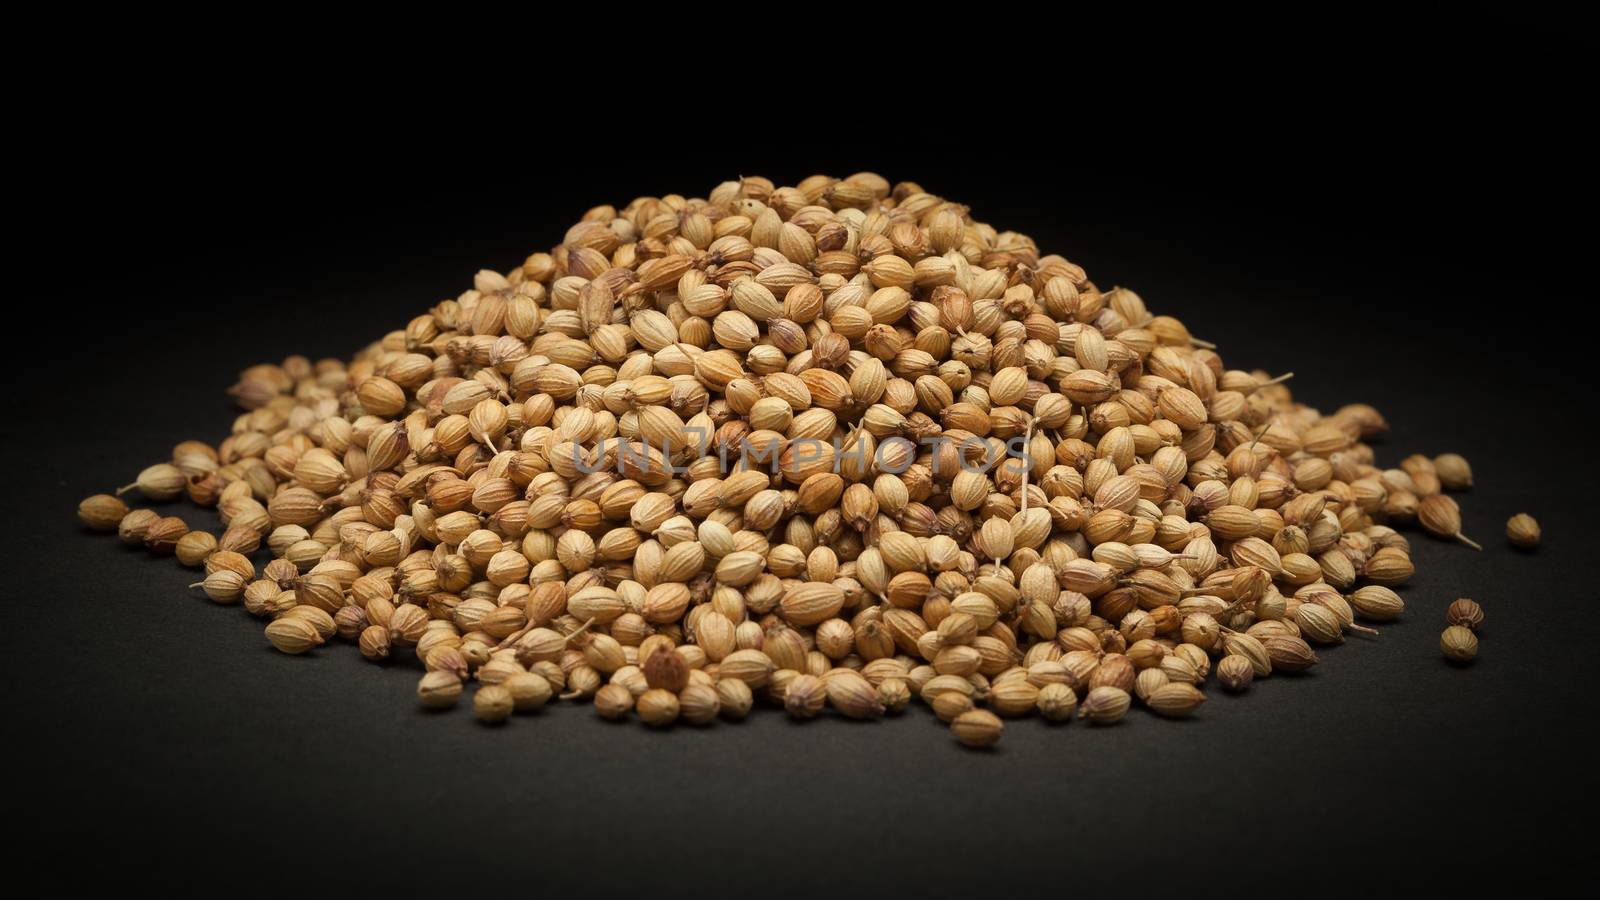 Pile of Organic Dried coriander seeds (Coriandrum sativum) by ziprashantzi